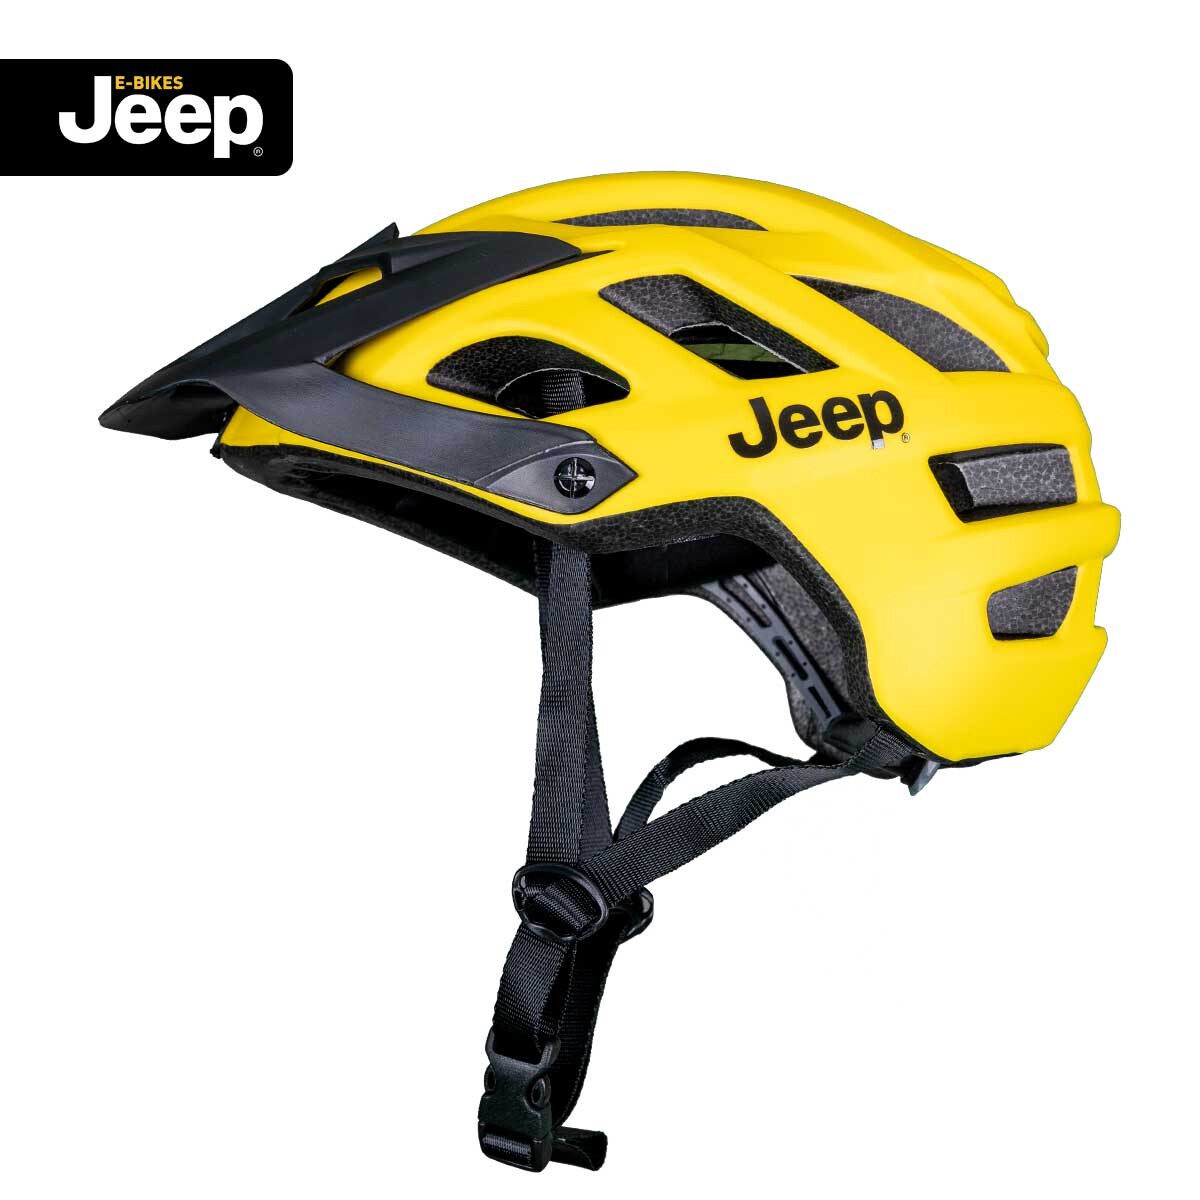 Jeep E-Bikes Helm Pro yellow M